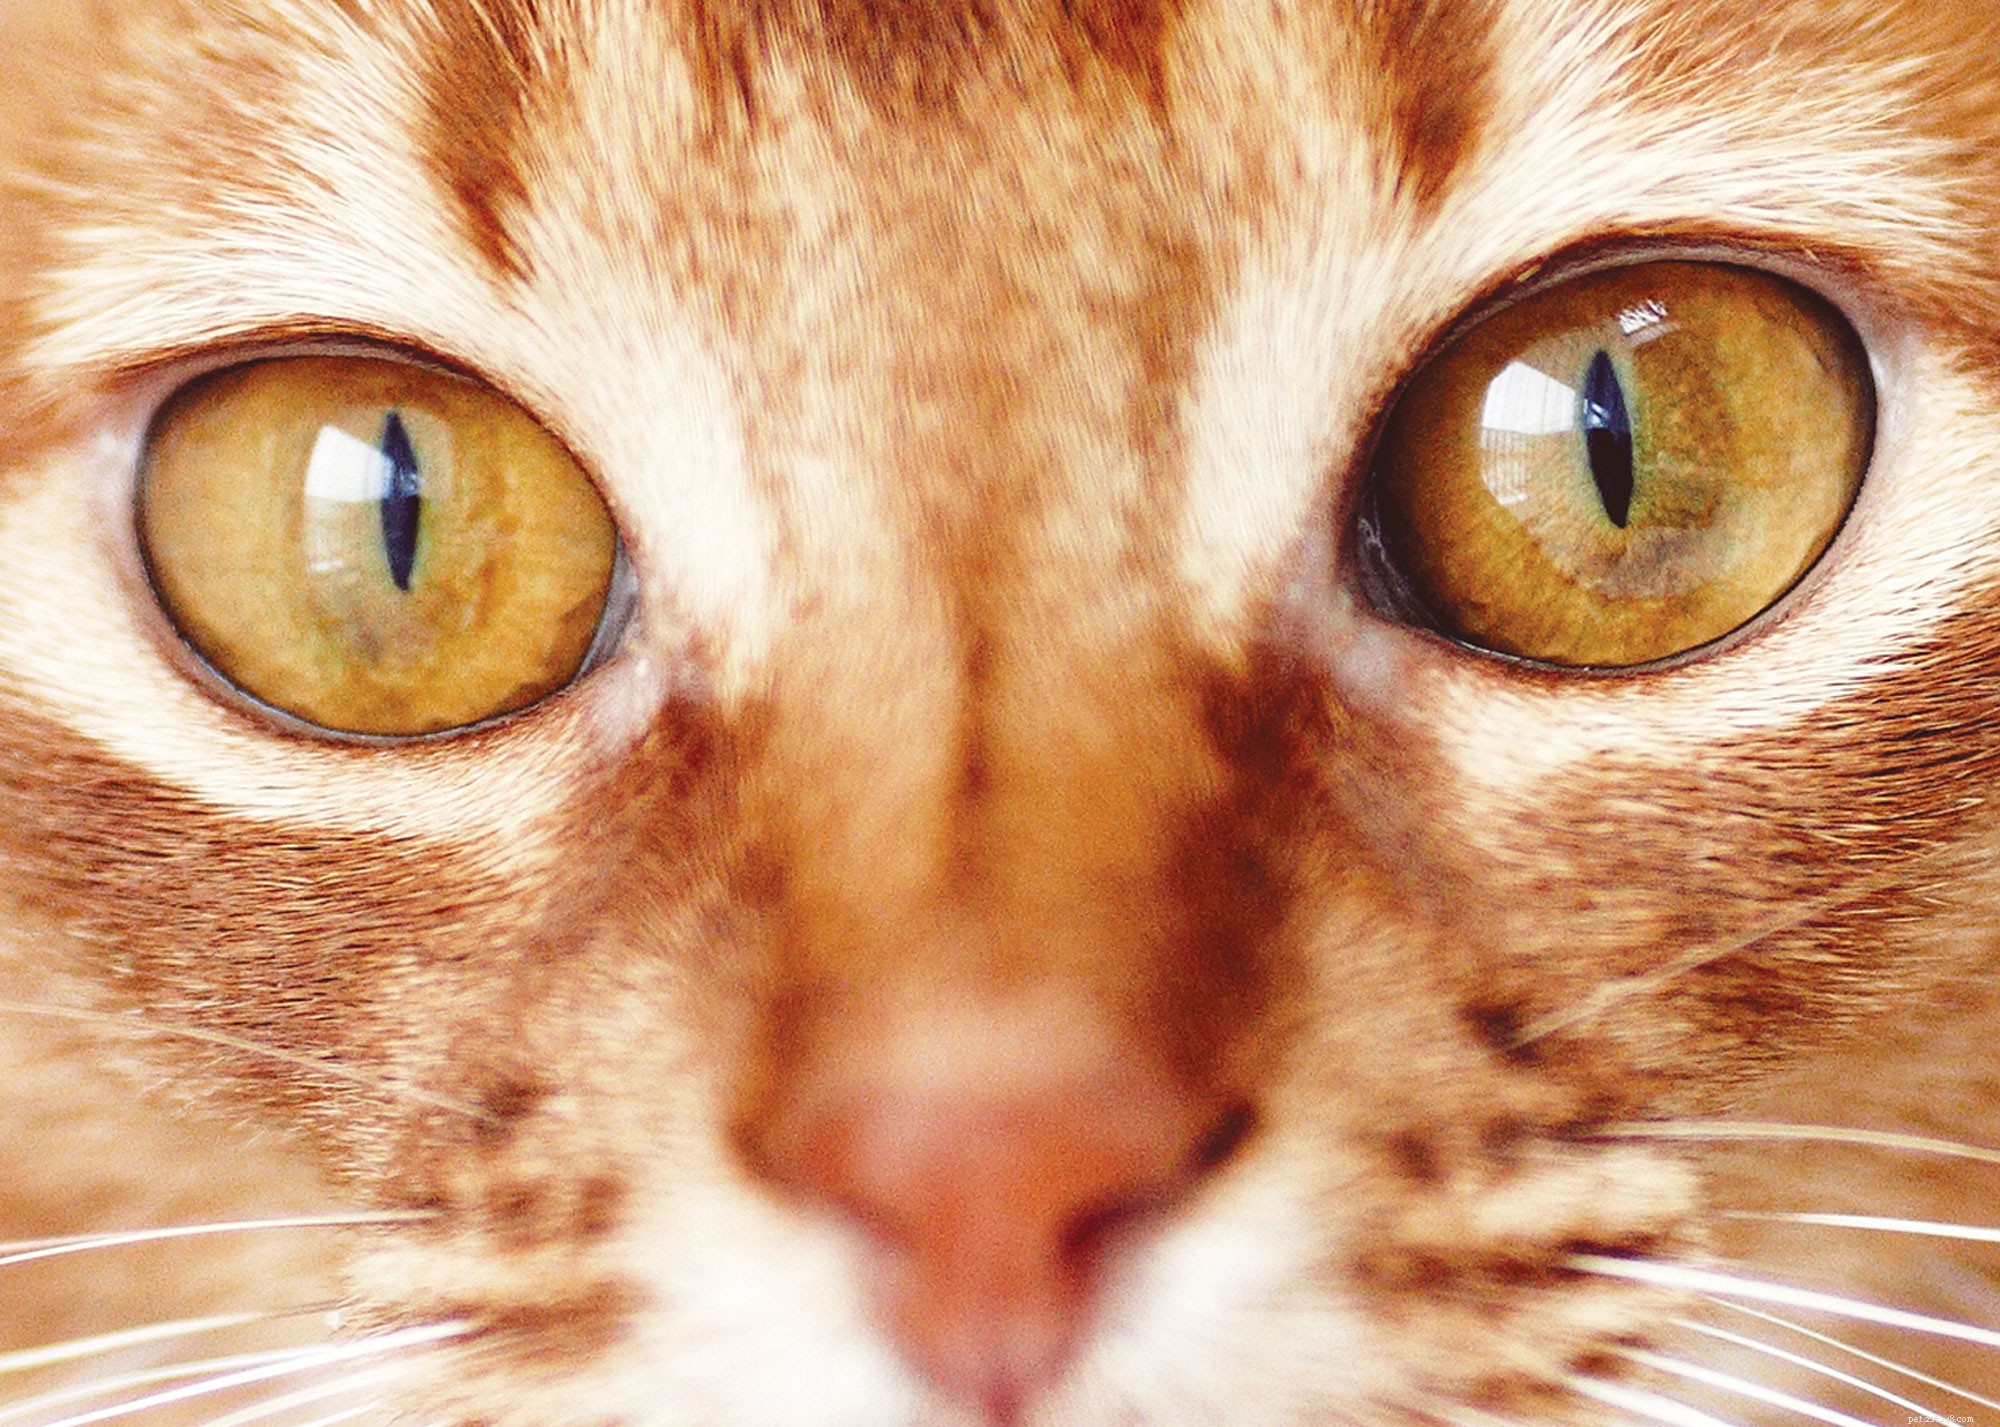 8 zajímavých faktů o kočkách pro všechny milovníky koček